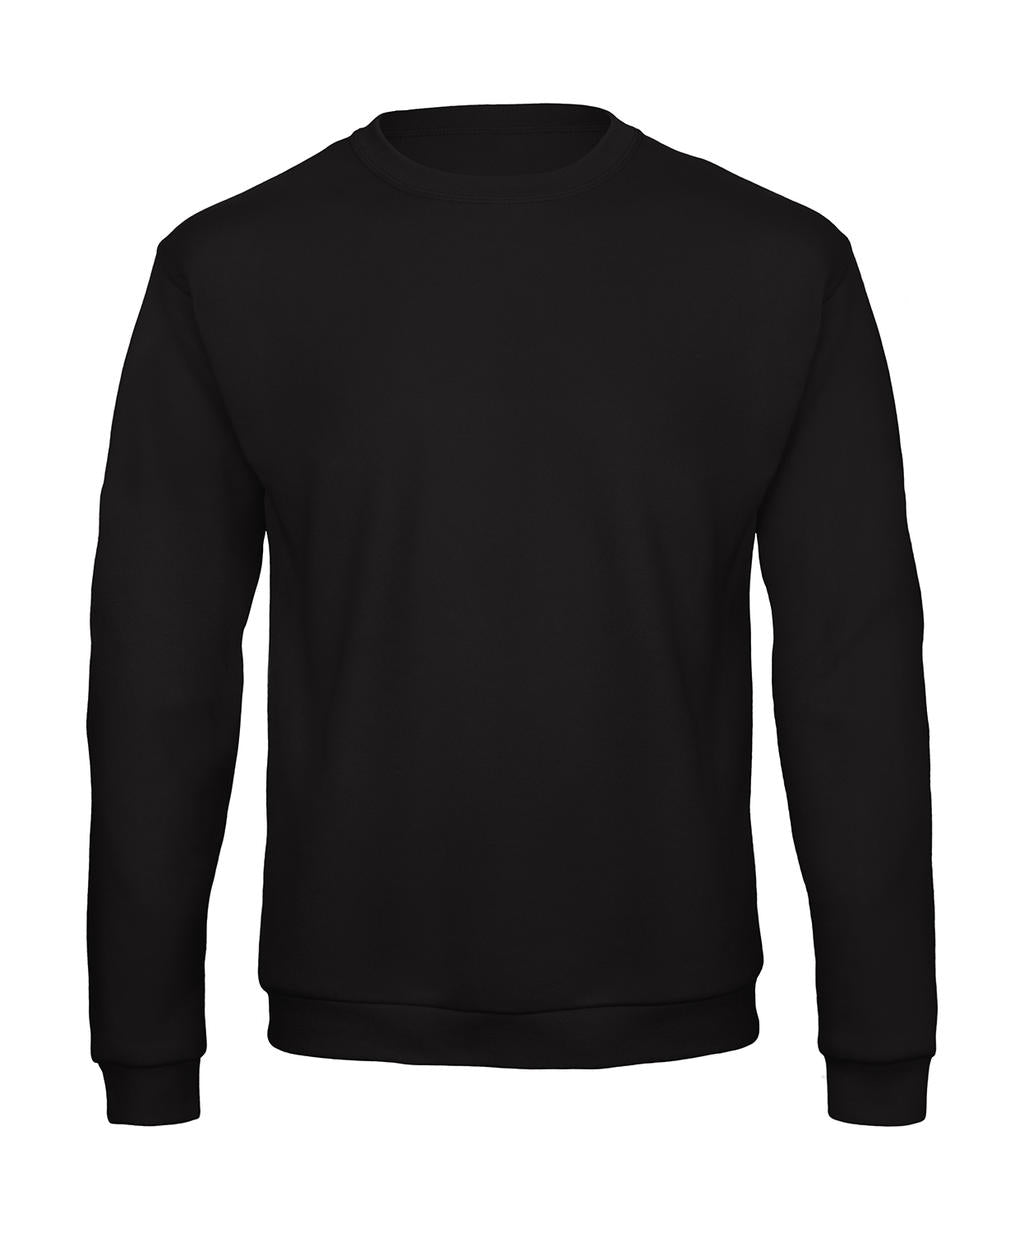 B&C Unisex Round Neck Sweatshirt